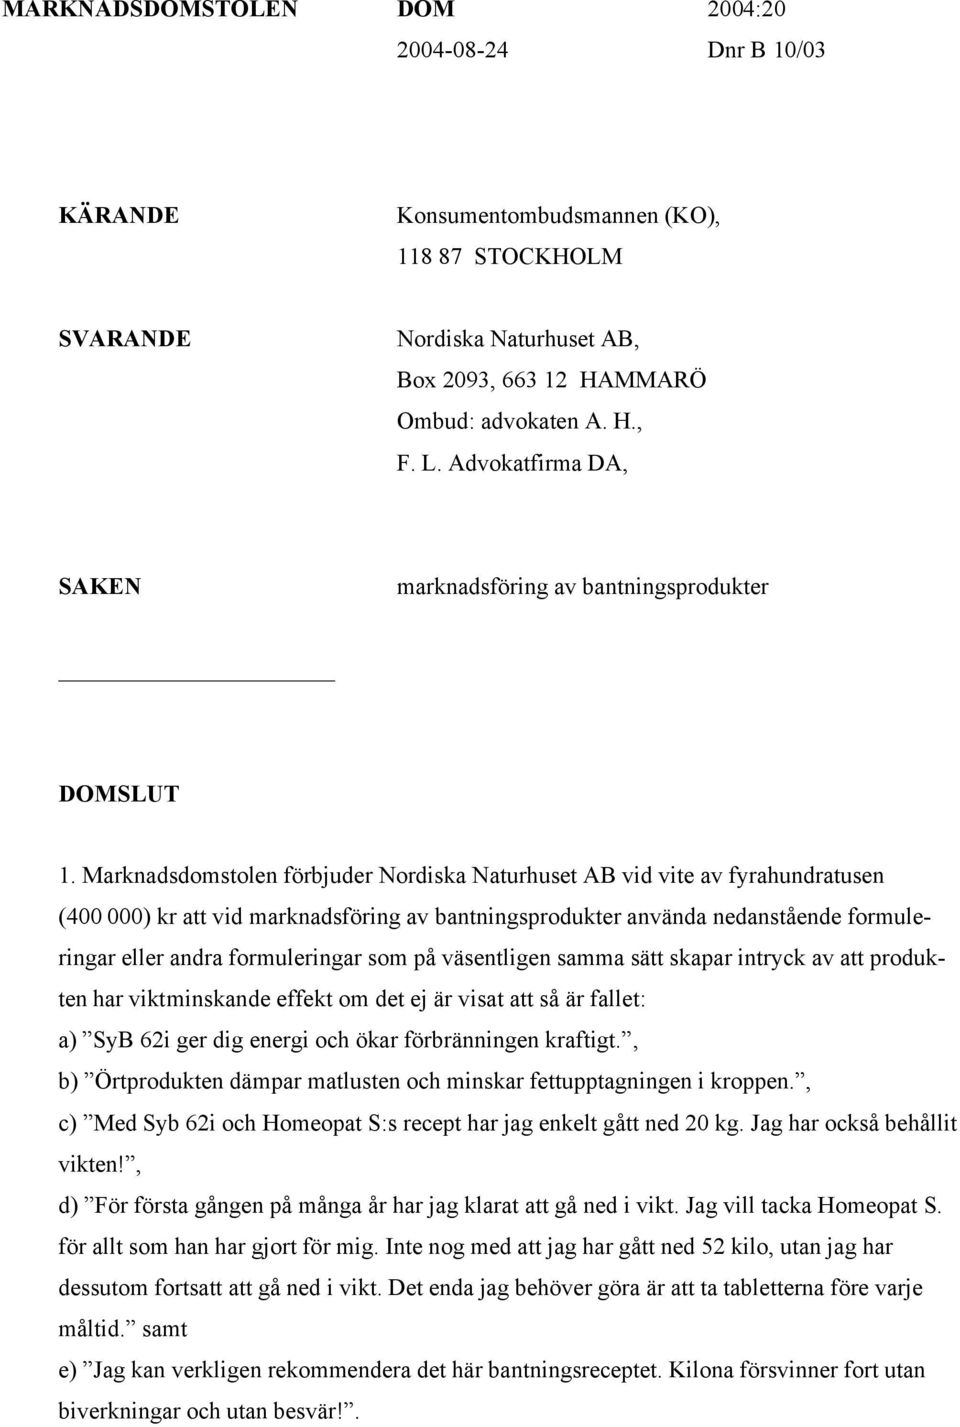 Marknadsdomstolen förbjuder Nordiska Naturhuset AB vid vite av fyrahundratusen (400 000) kr att vid marknadsföring av bantningsprodukter använda nedanstående formuleringar eller andra formuleringar